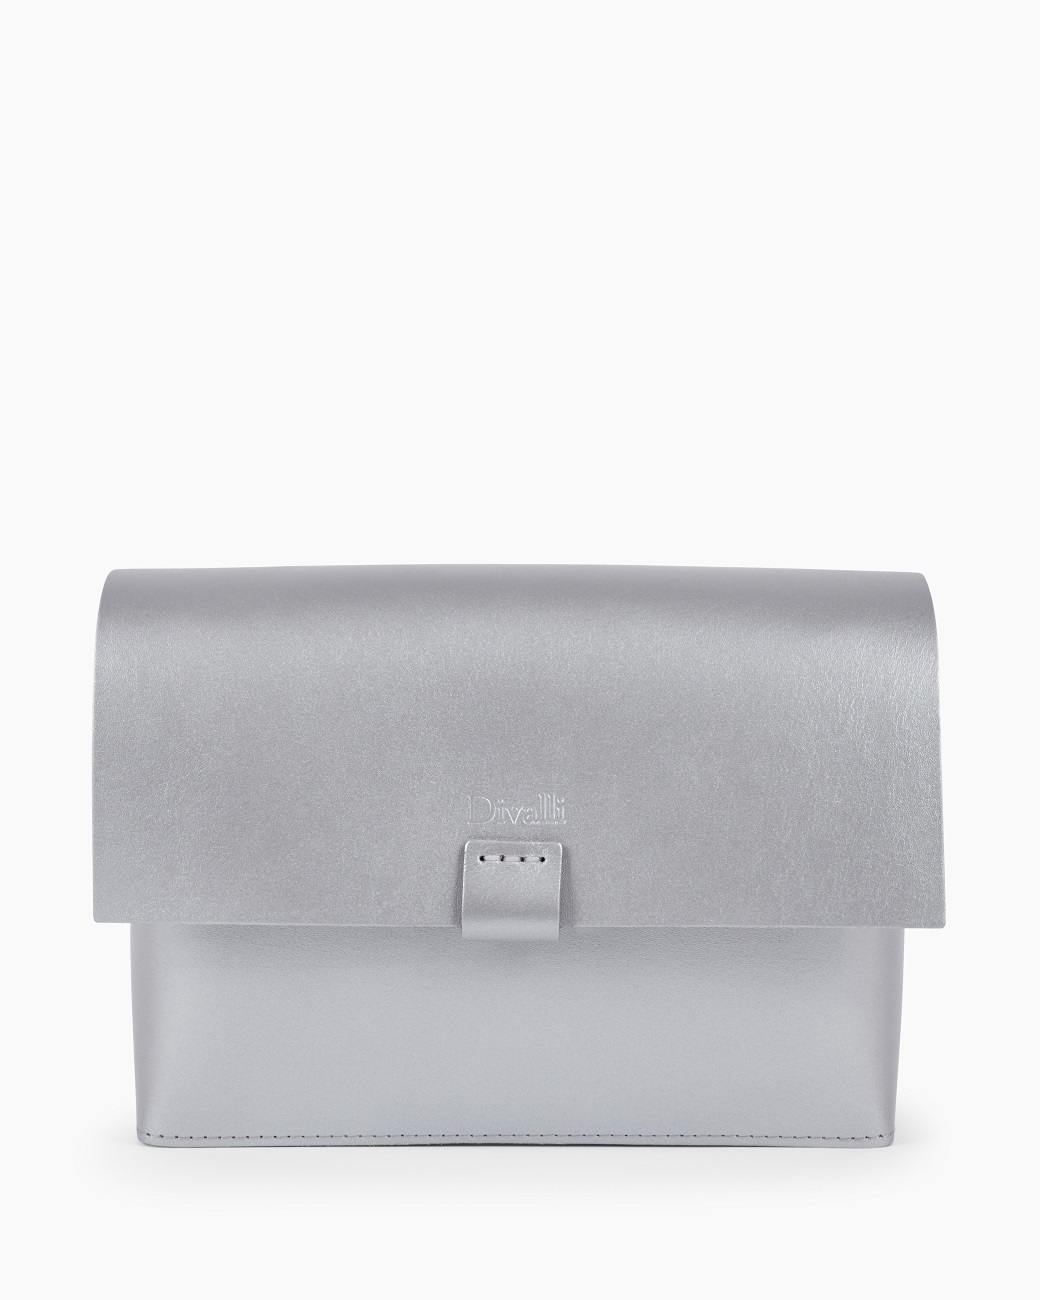 Женская сумка на плечо из натуральной кожи серебро A005 silver